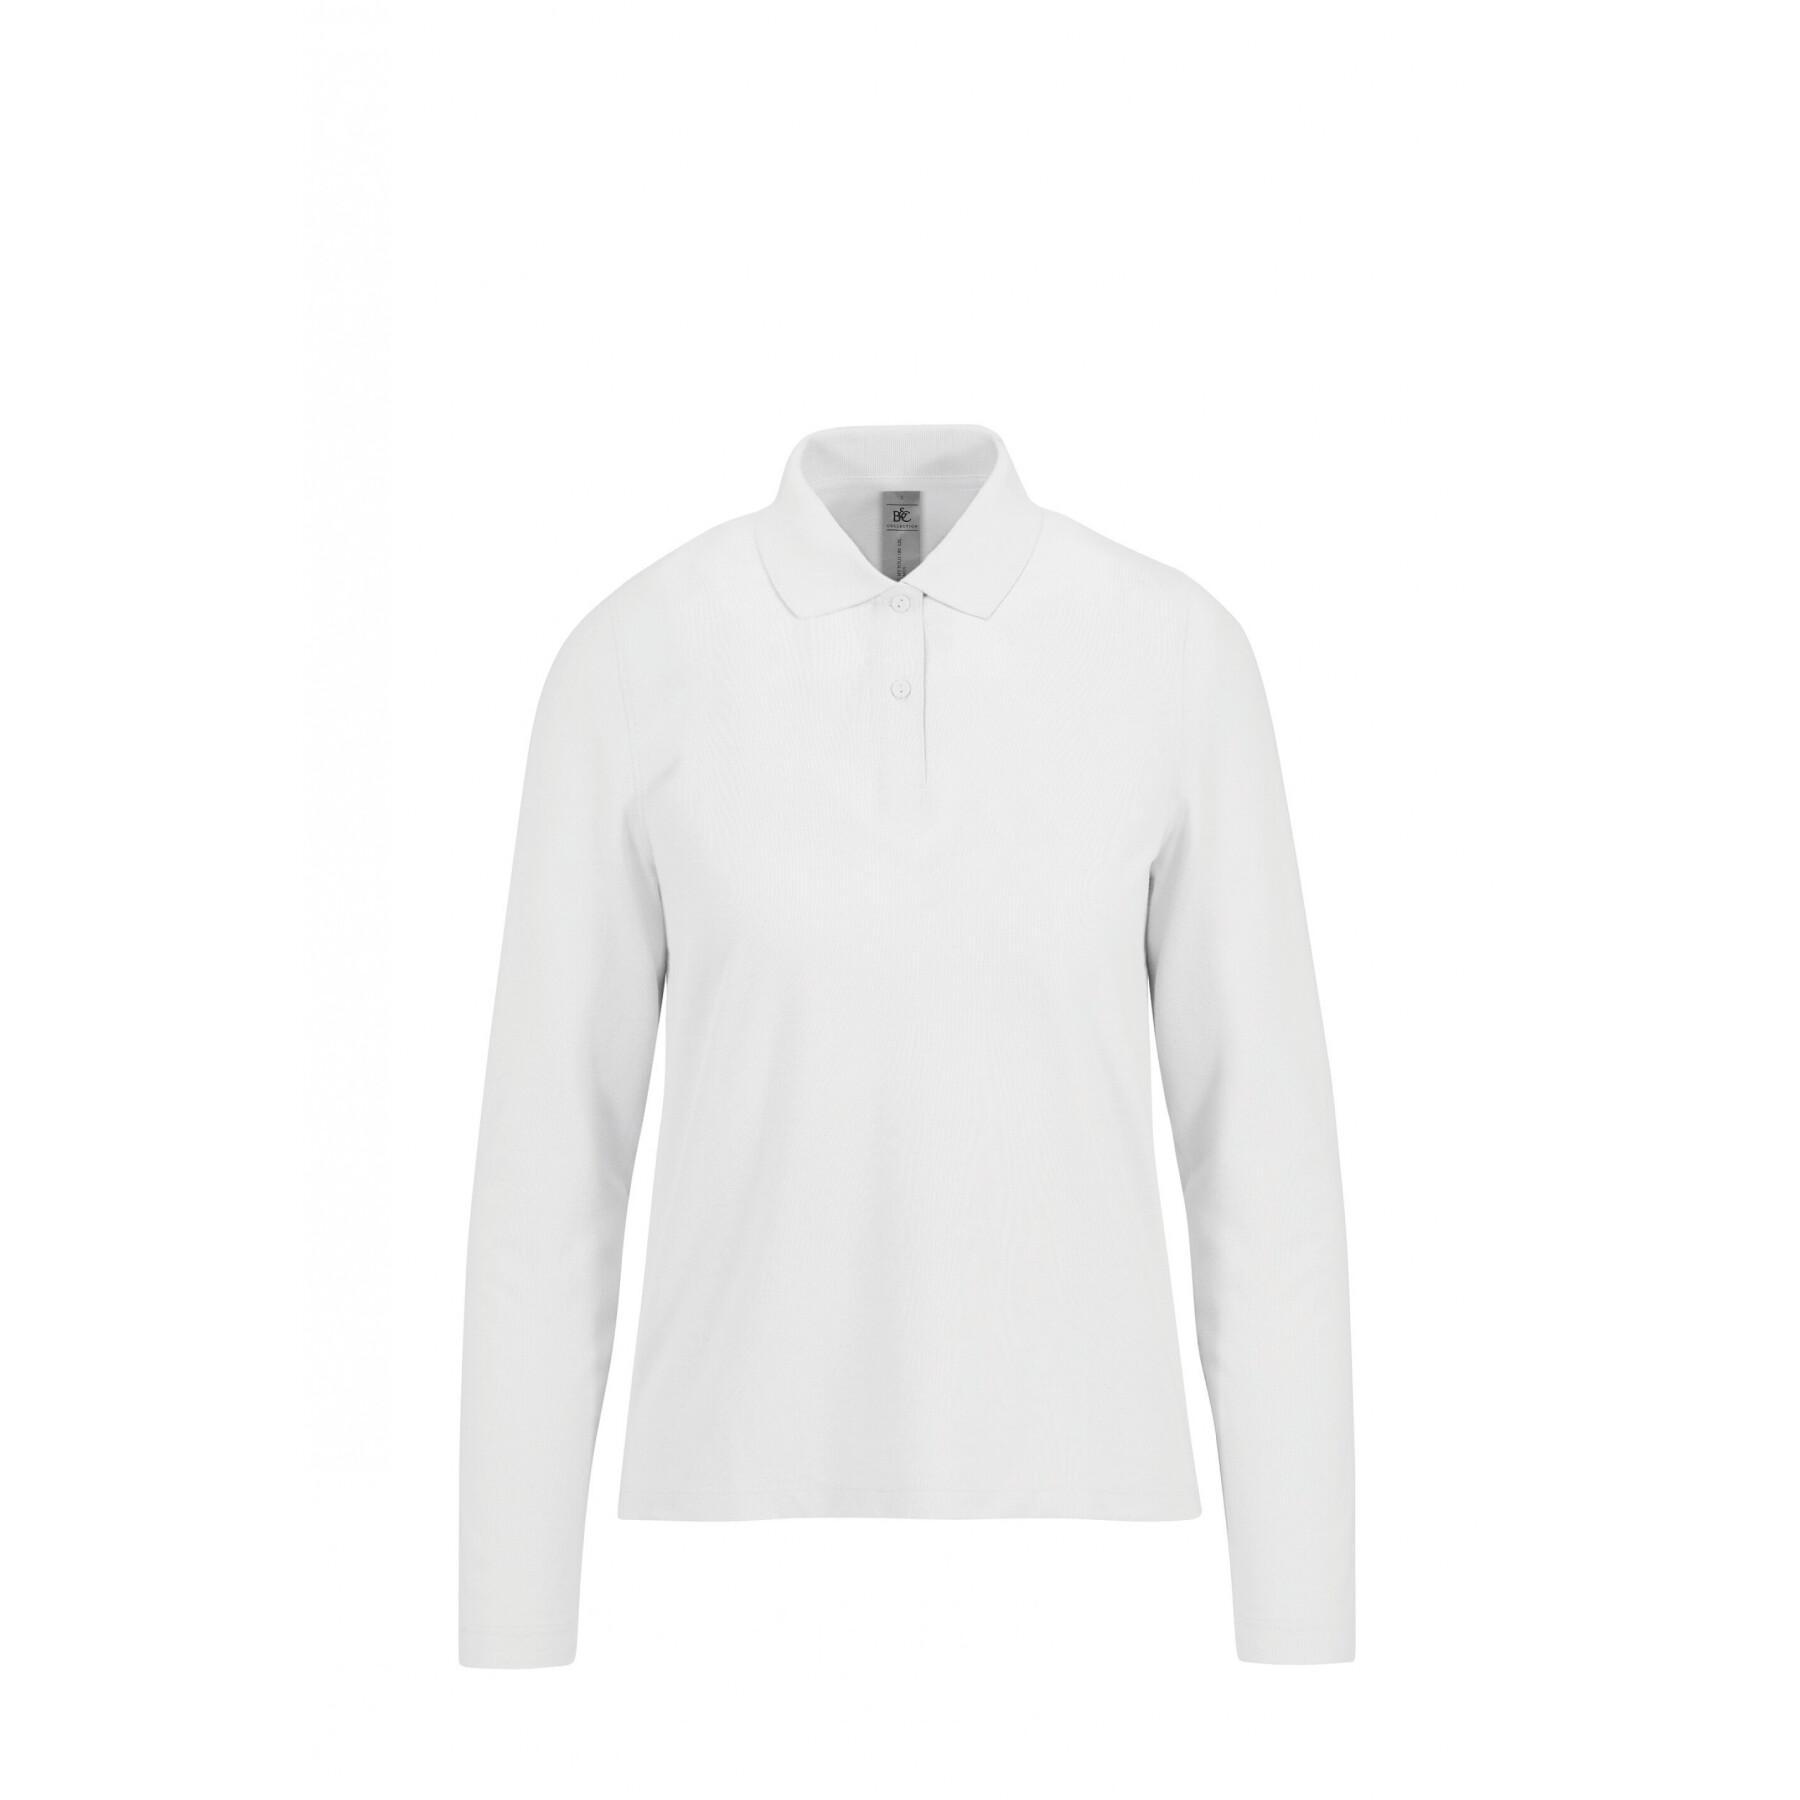 Women's long-sleeved polo shirt B&C 180